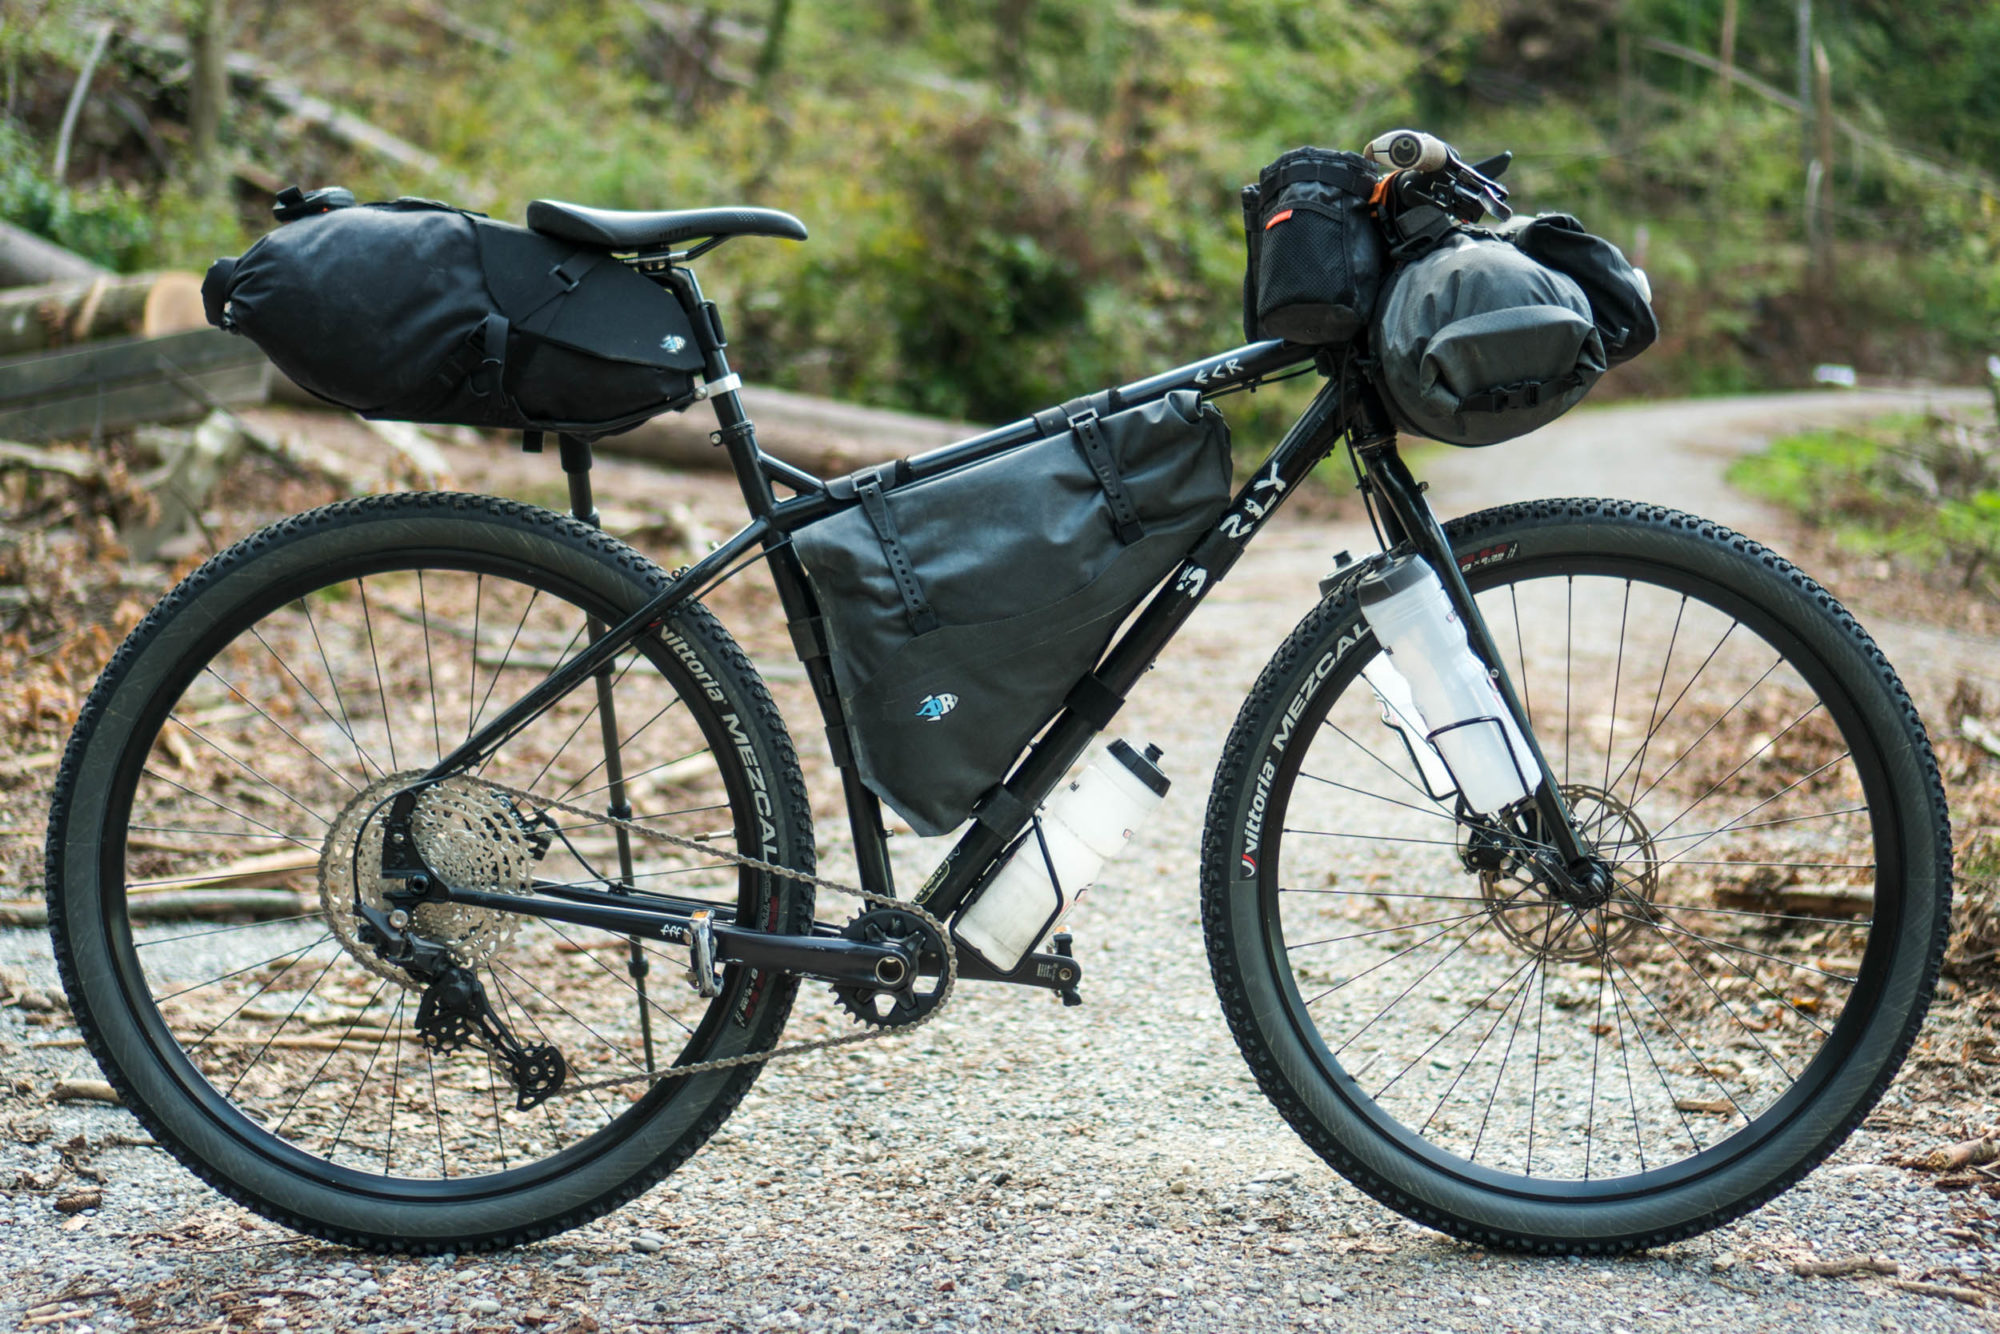 XLC Waterproof Weather Resistant Cycling Overshoes Mountain Bike Sizes UK 8-11 